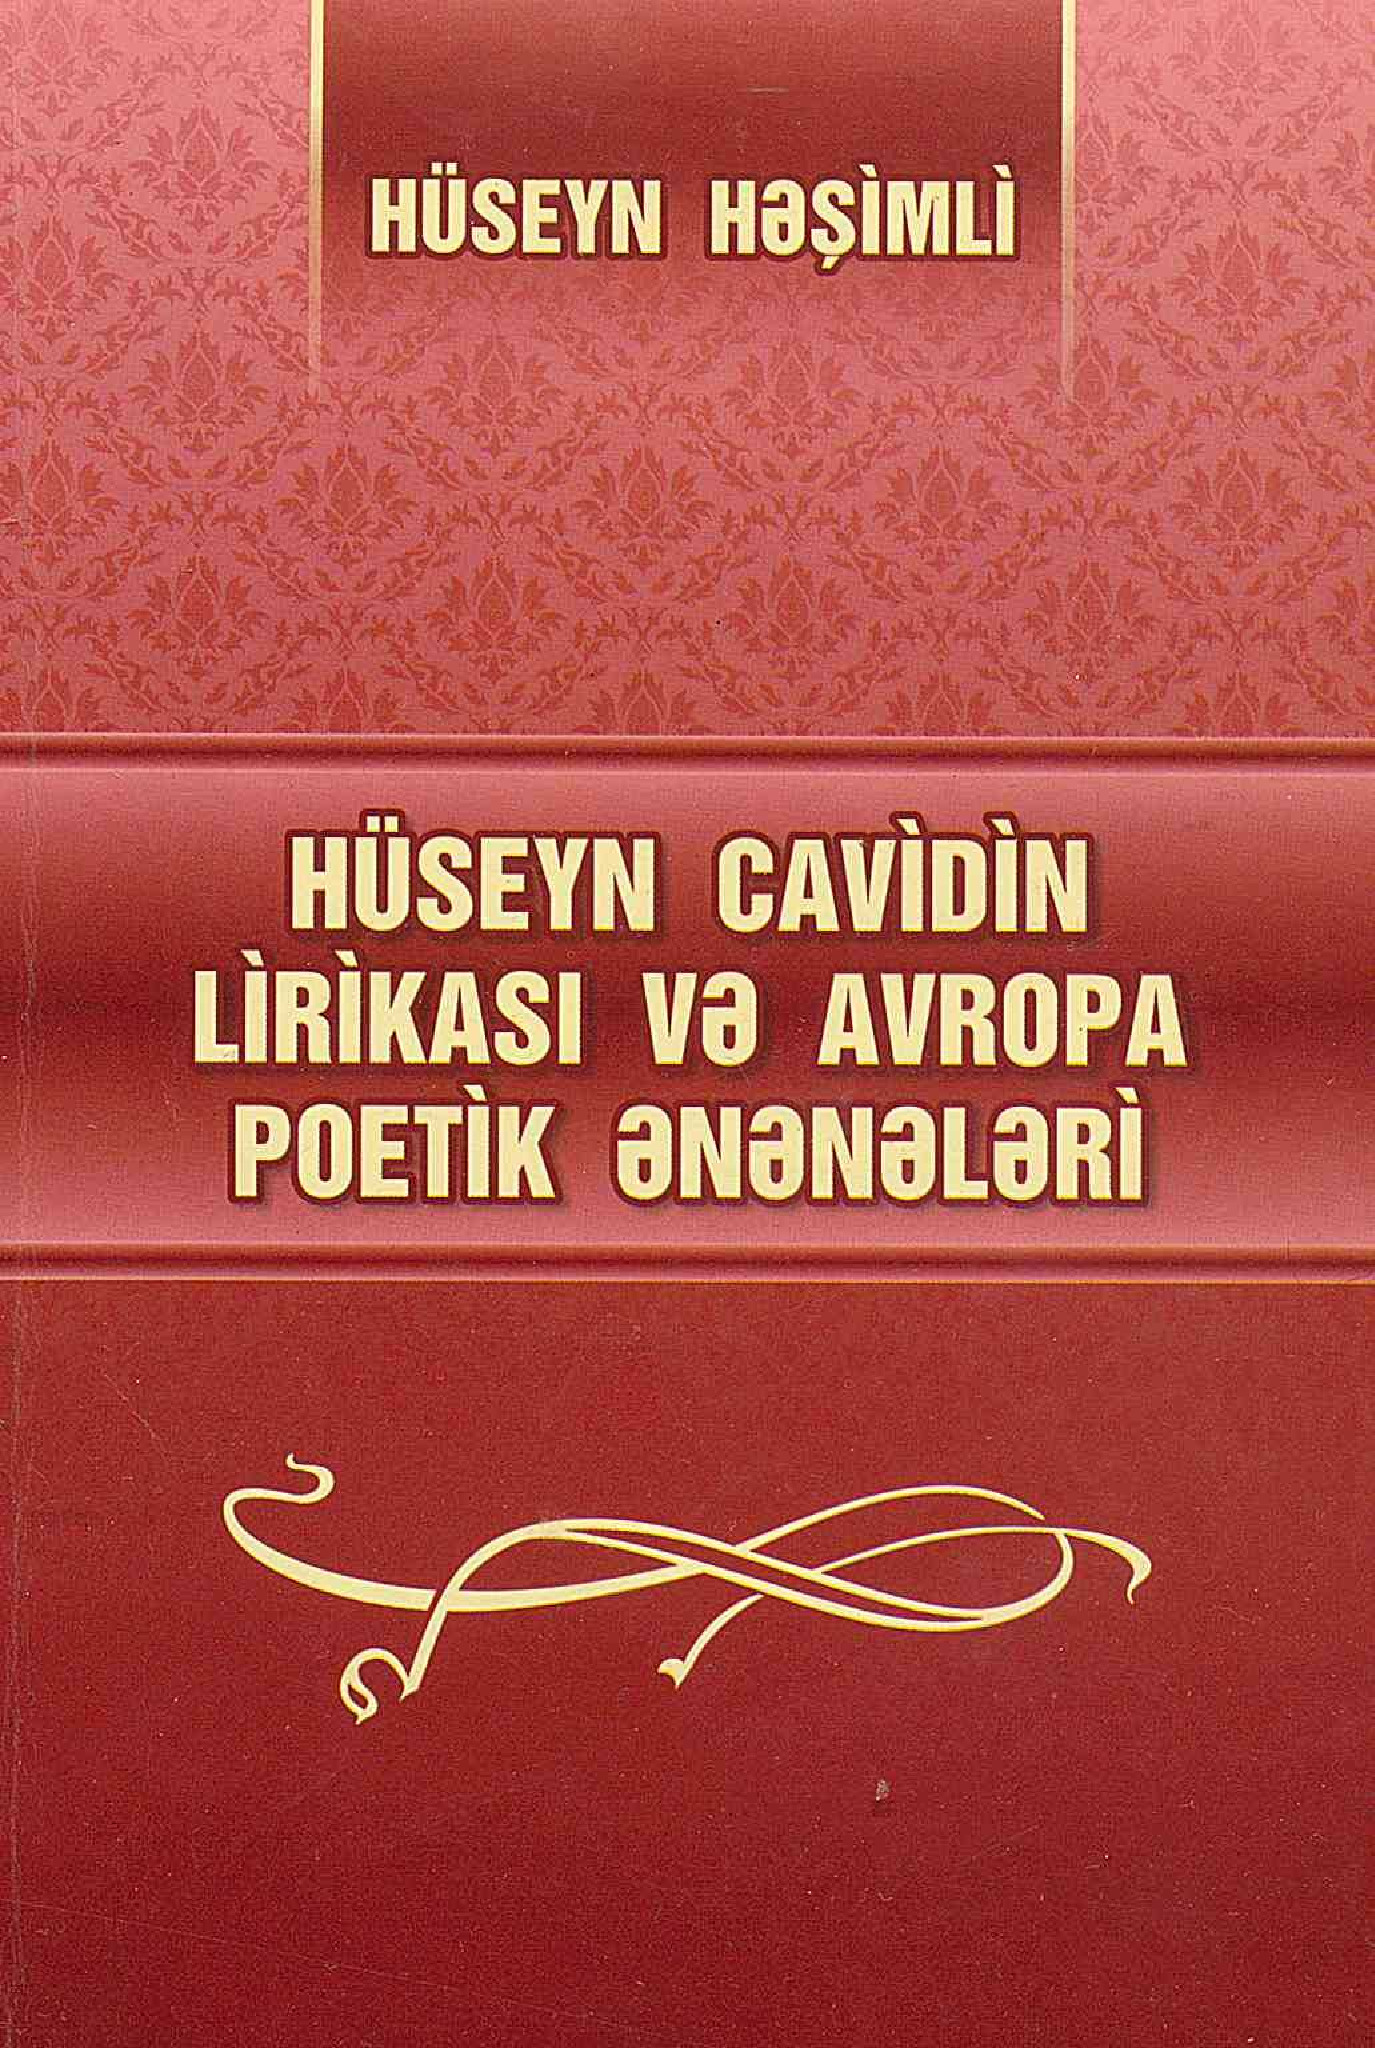 Hüseyn Cavidin Lirikasi Ve Avropa Poetik Eneneleri-Hüseyn Heşimli-Baki-2012-93s